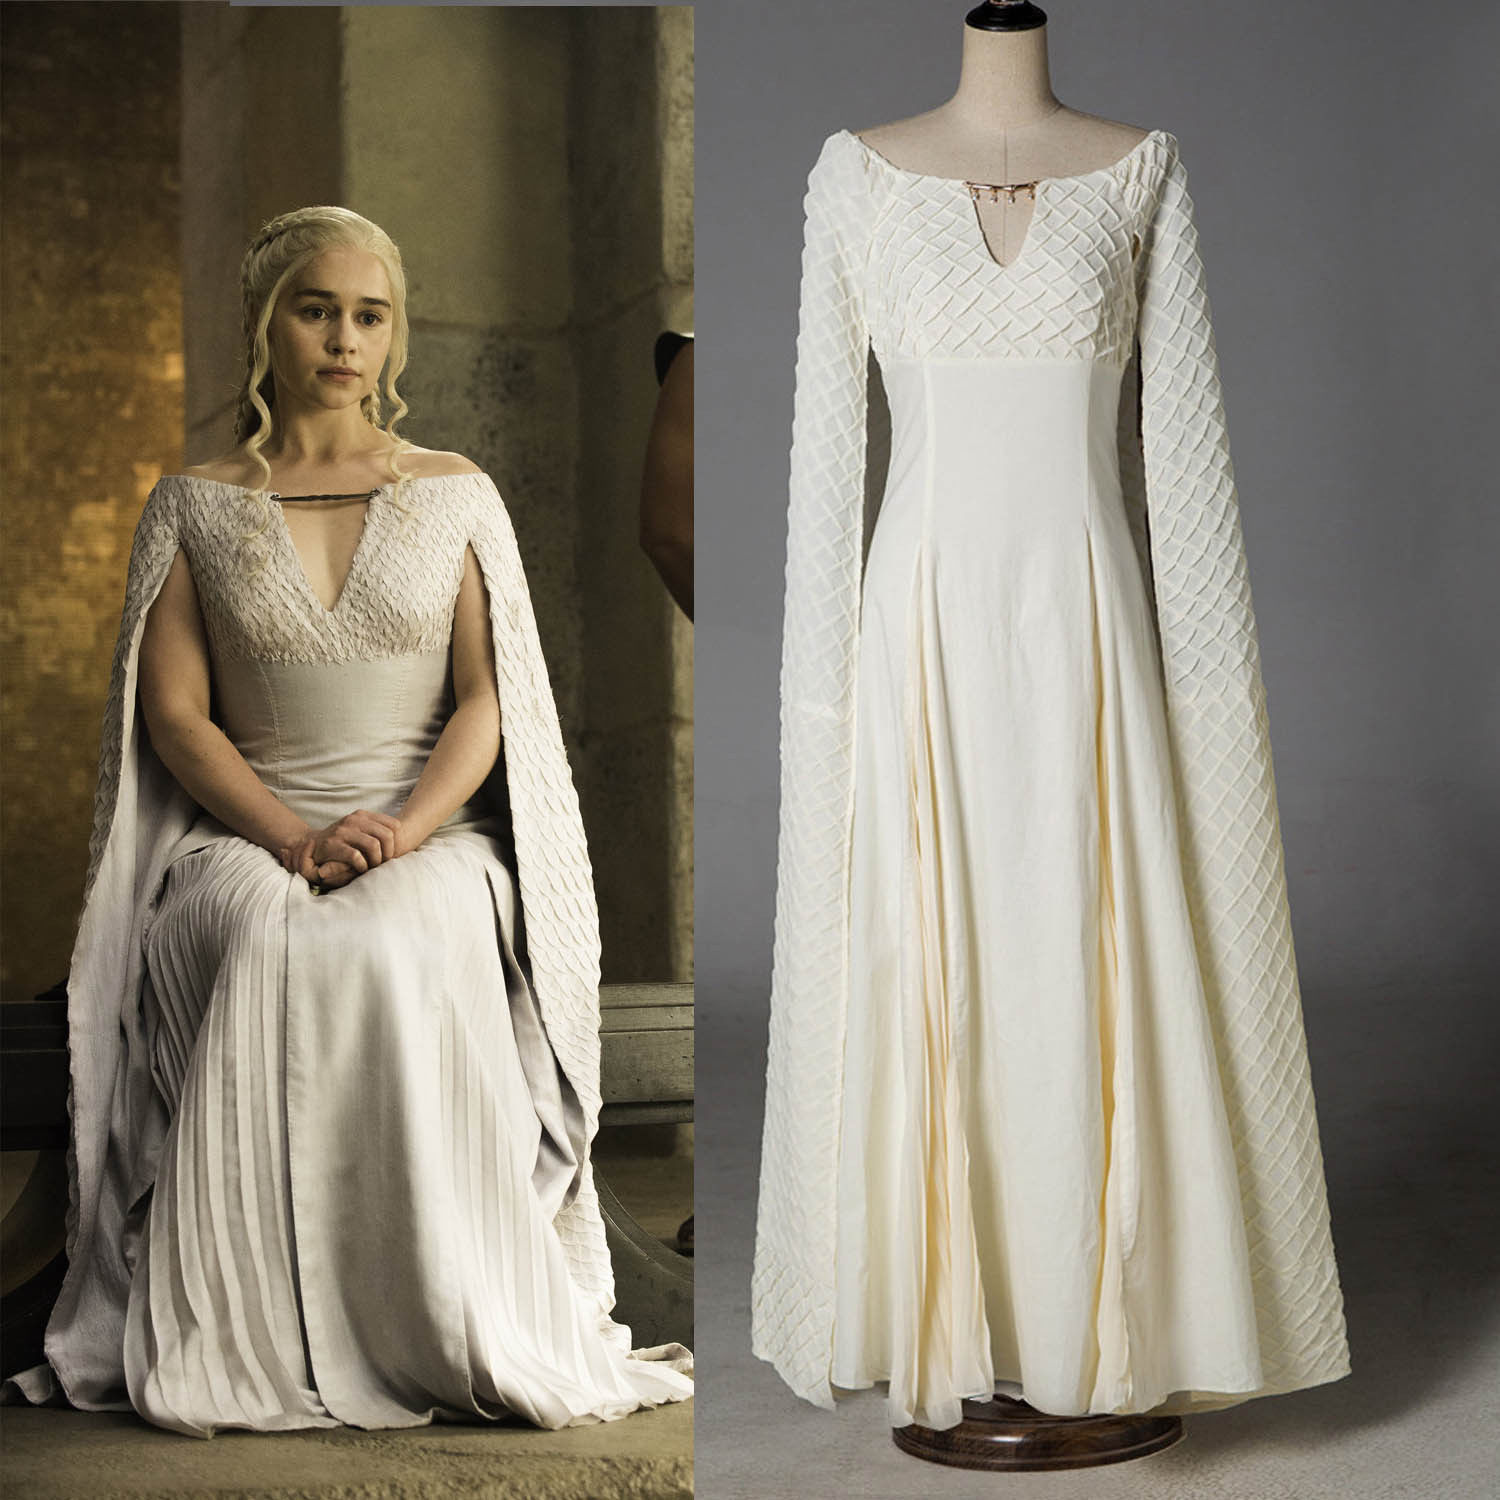 Game Of Thrones 5 Daenerys Targaryen Qarth Cosplay Dress Halloween Costume....